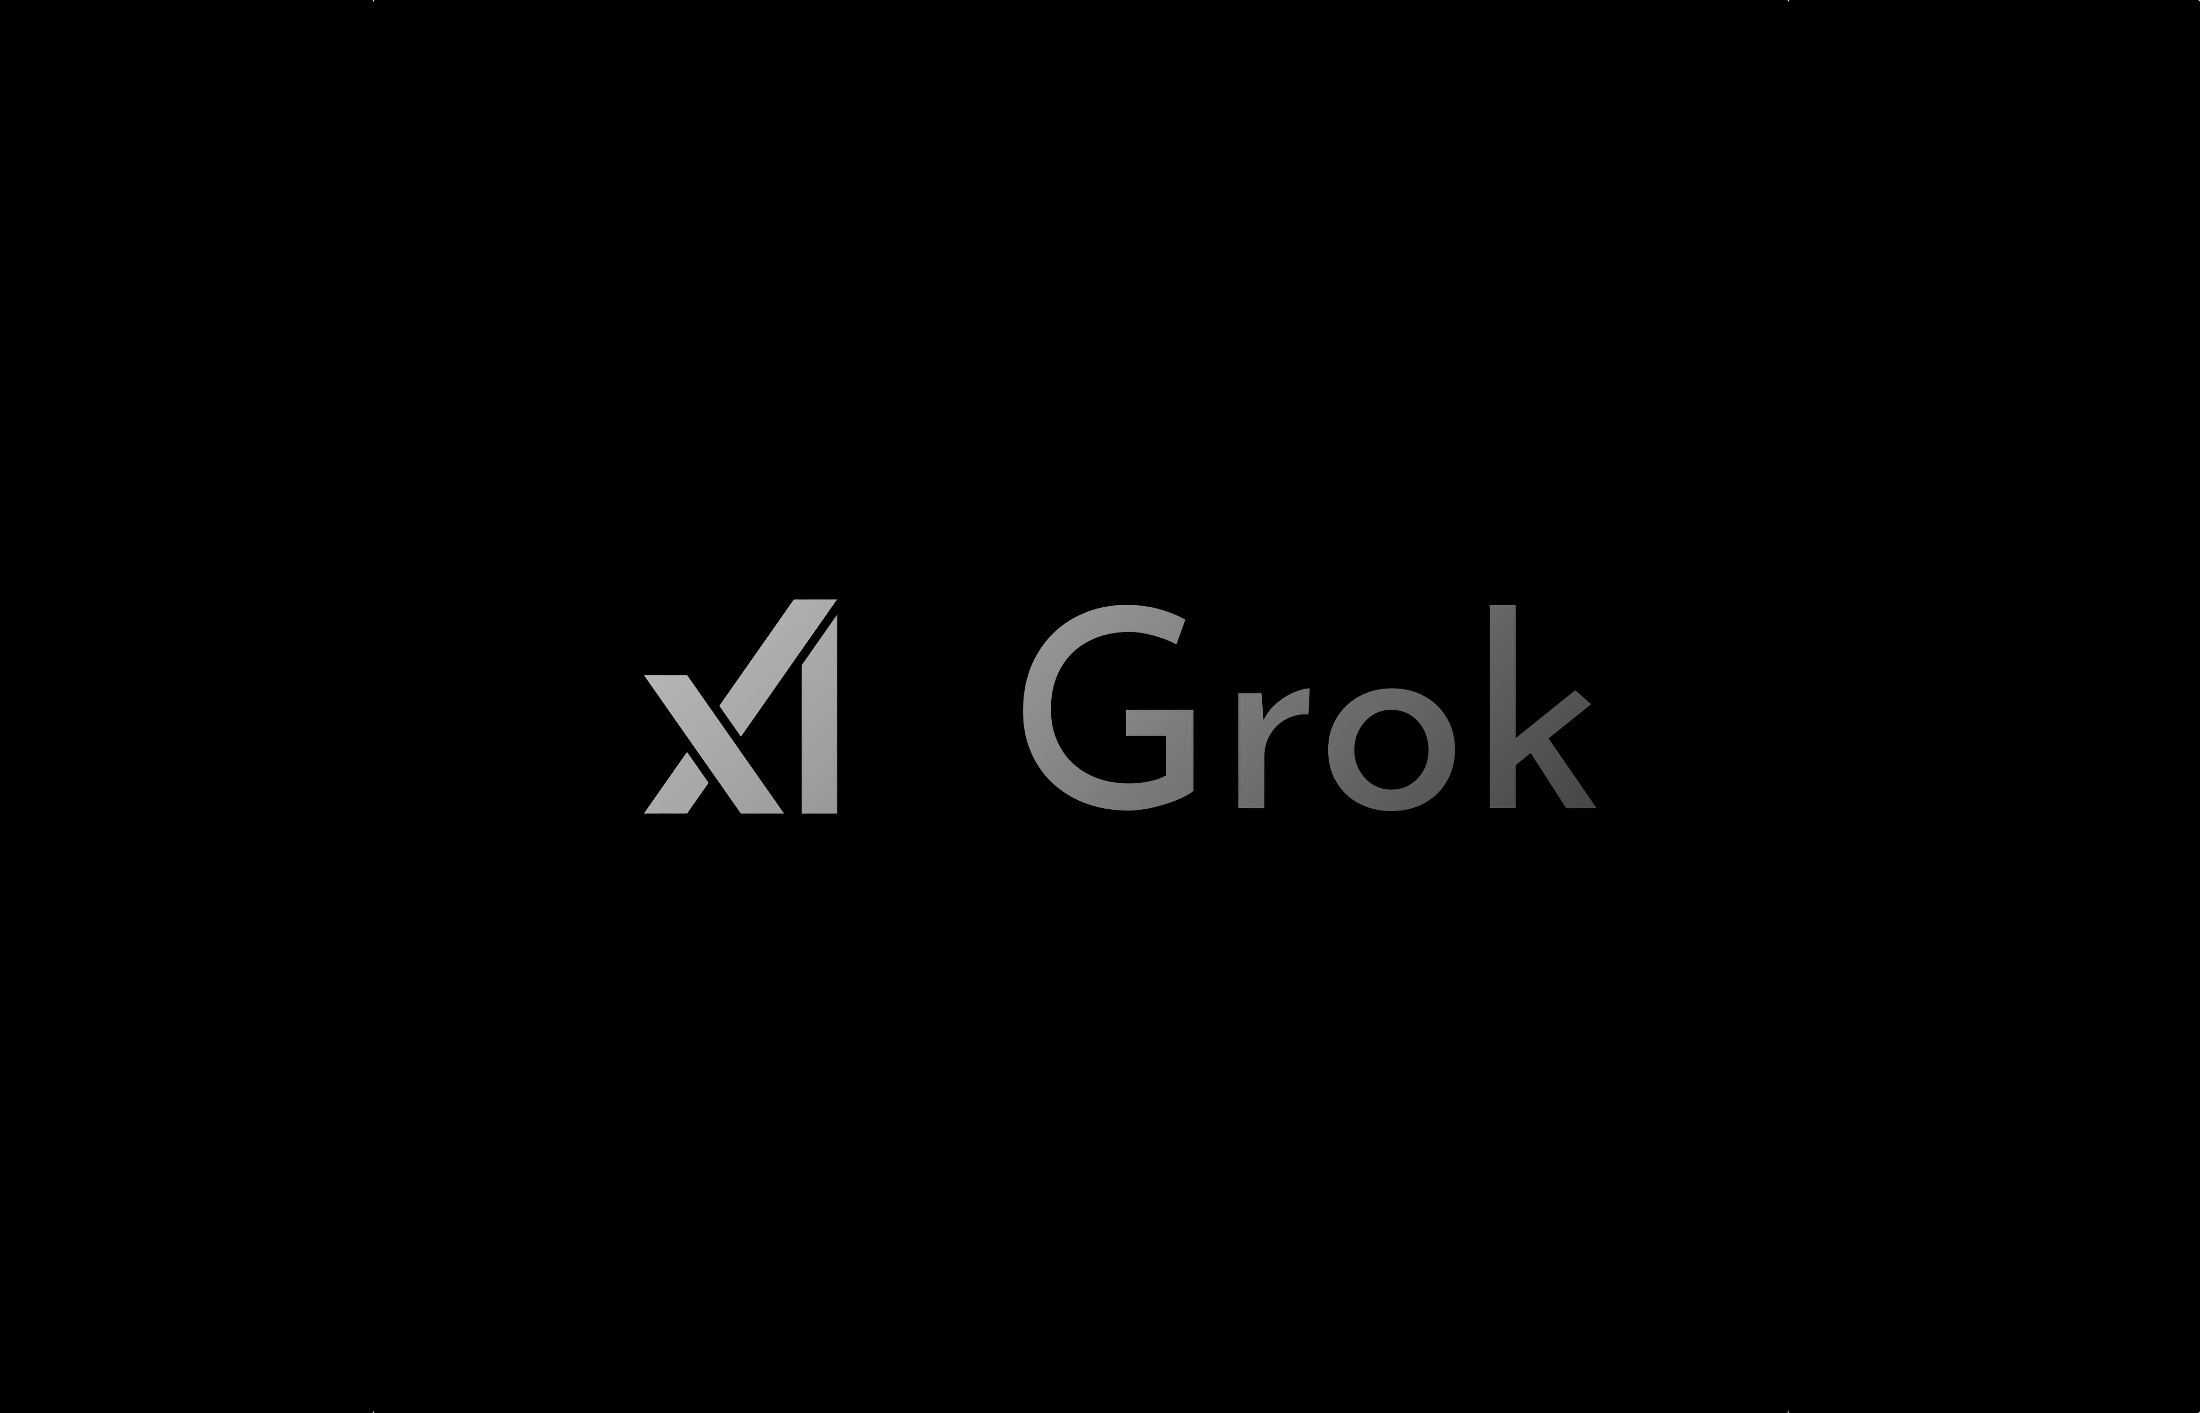 Илон Маск открыл исходный код своего чат-бота на базе ИИ Grok